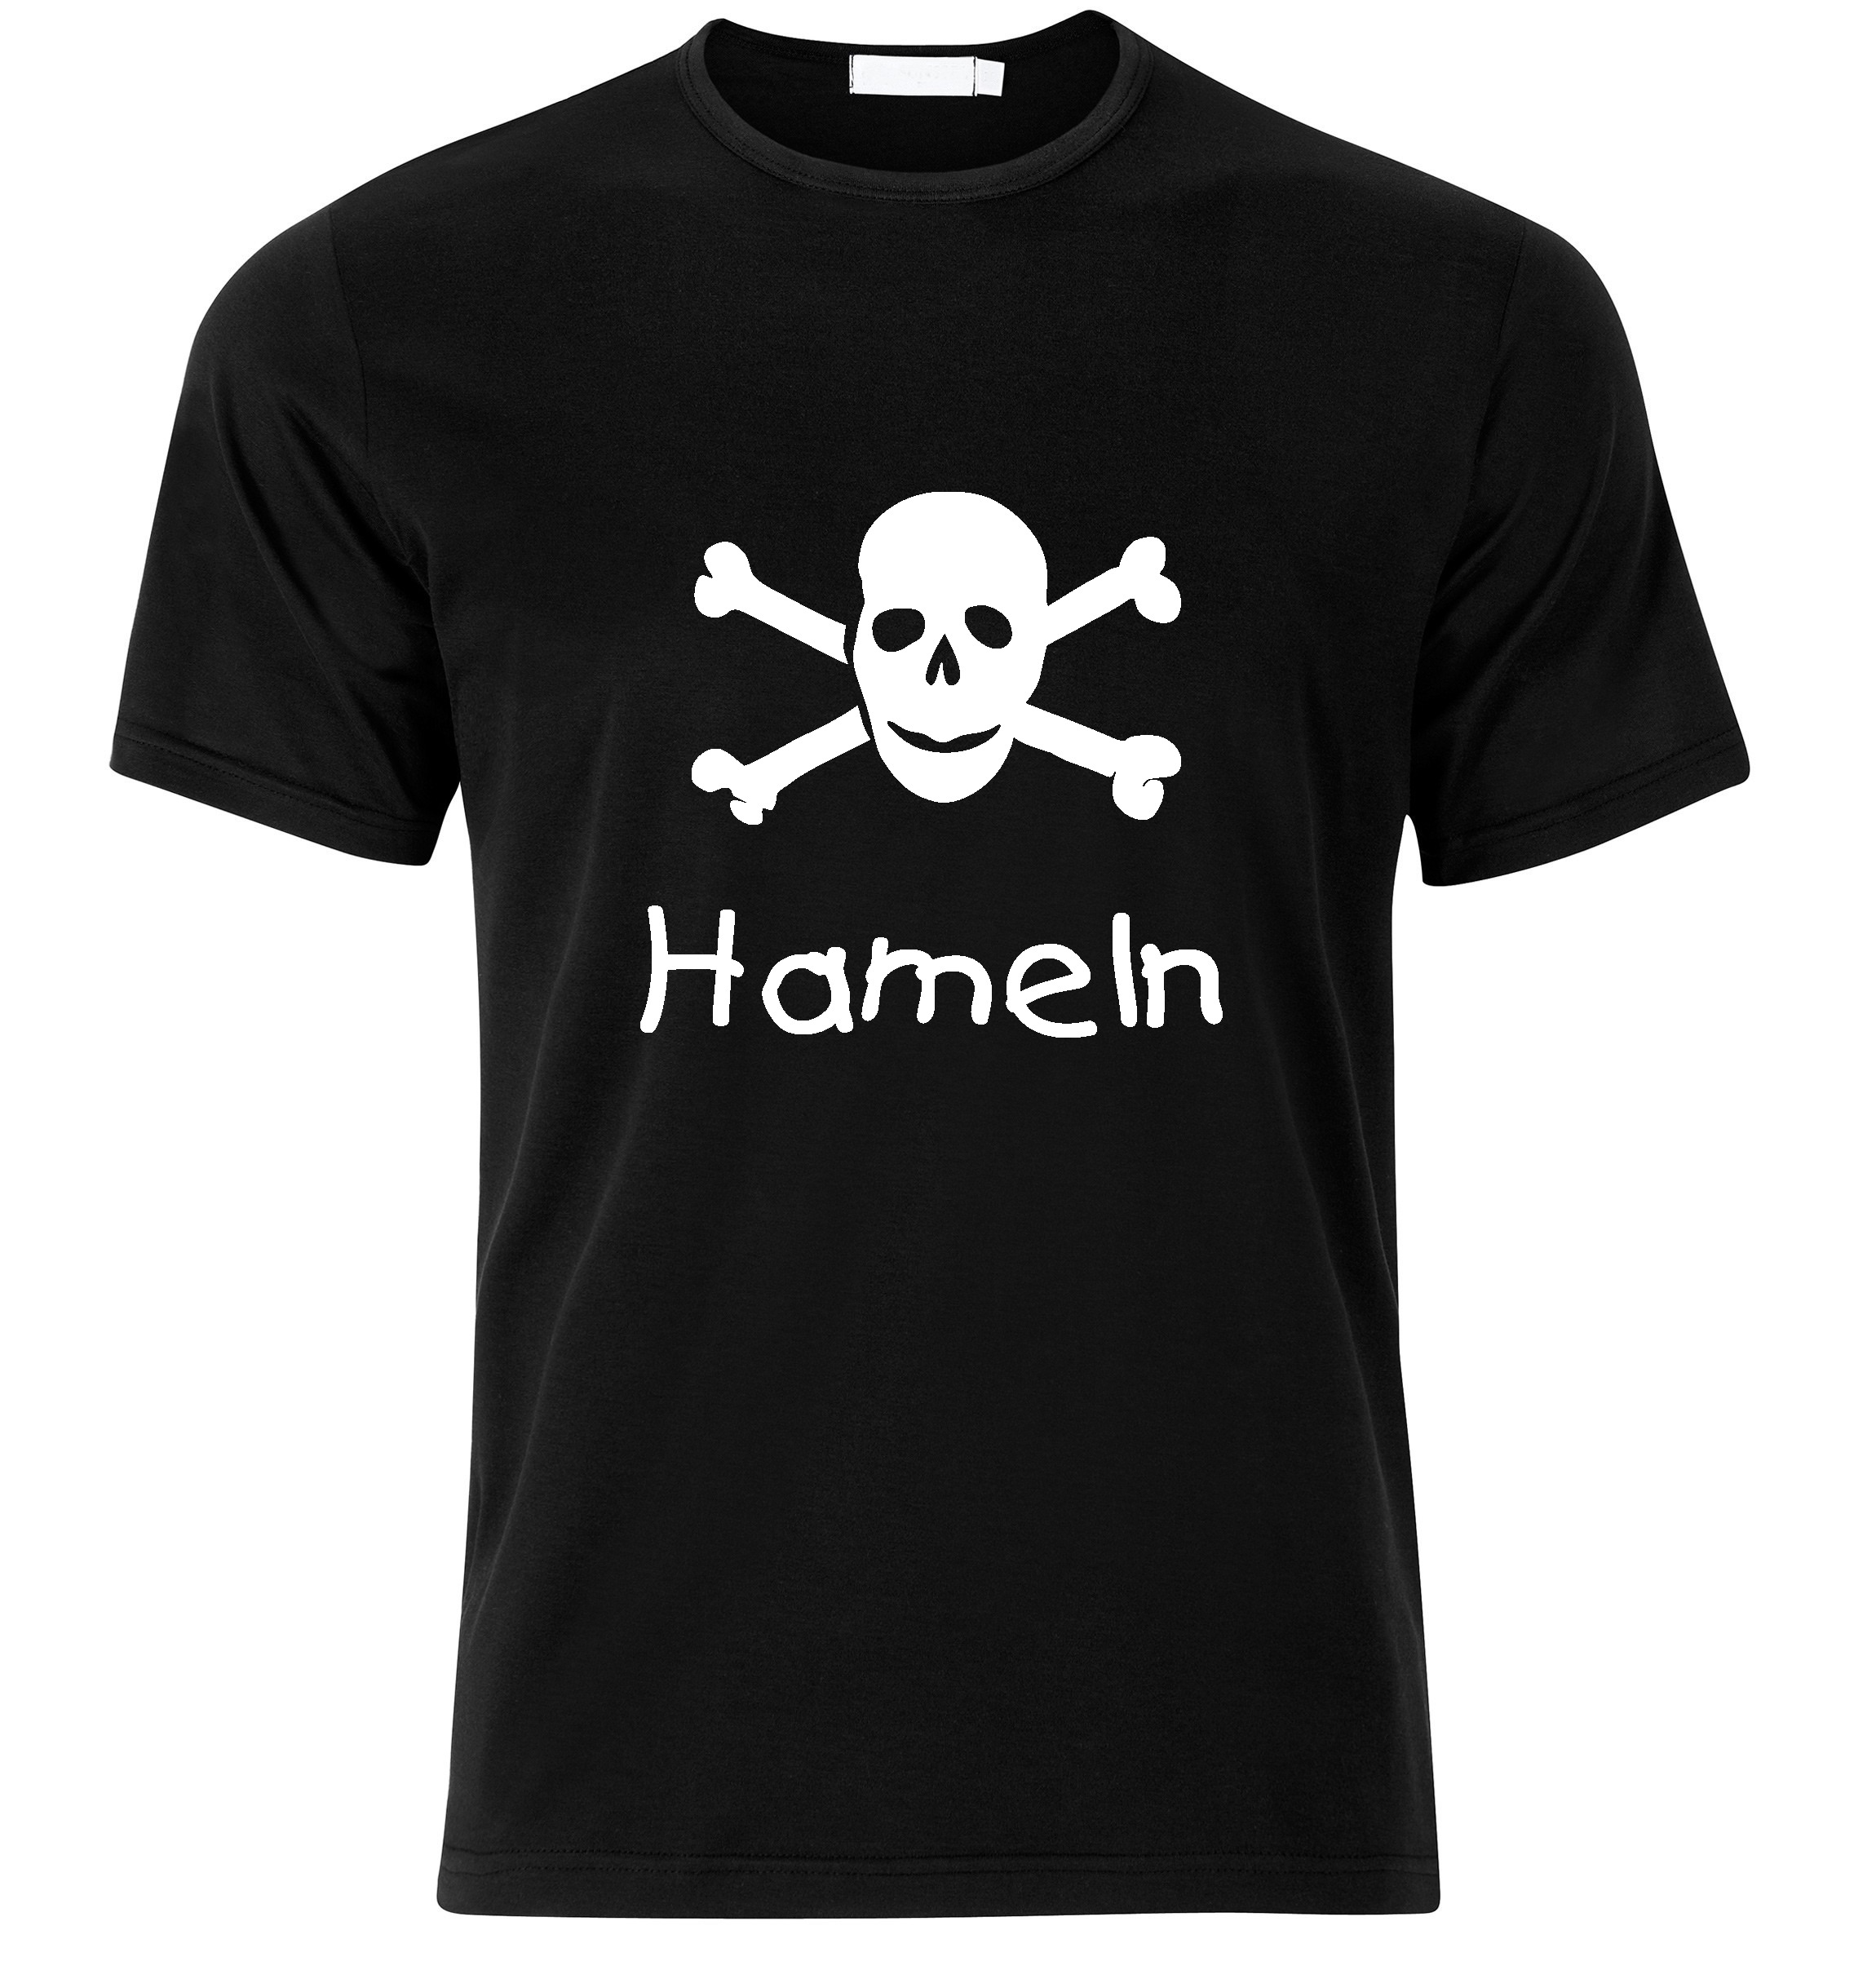 T-Shirt Hameln Jolly Roger, Totenkopf